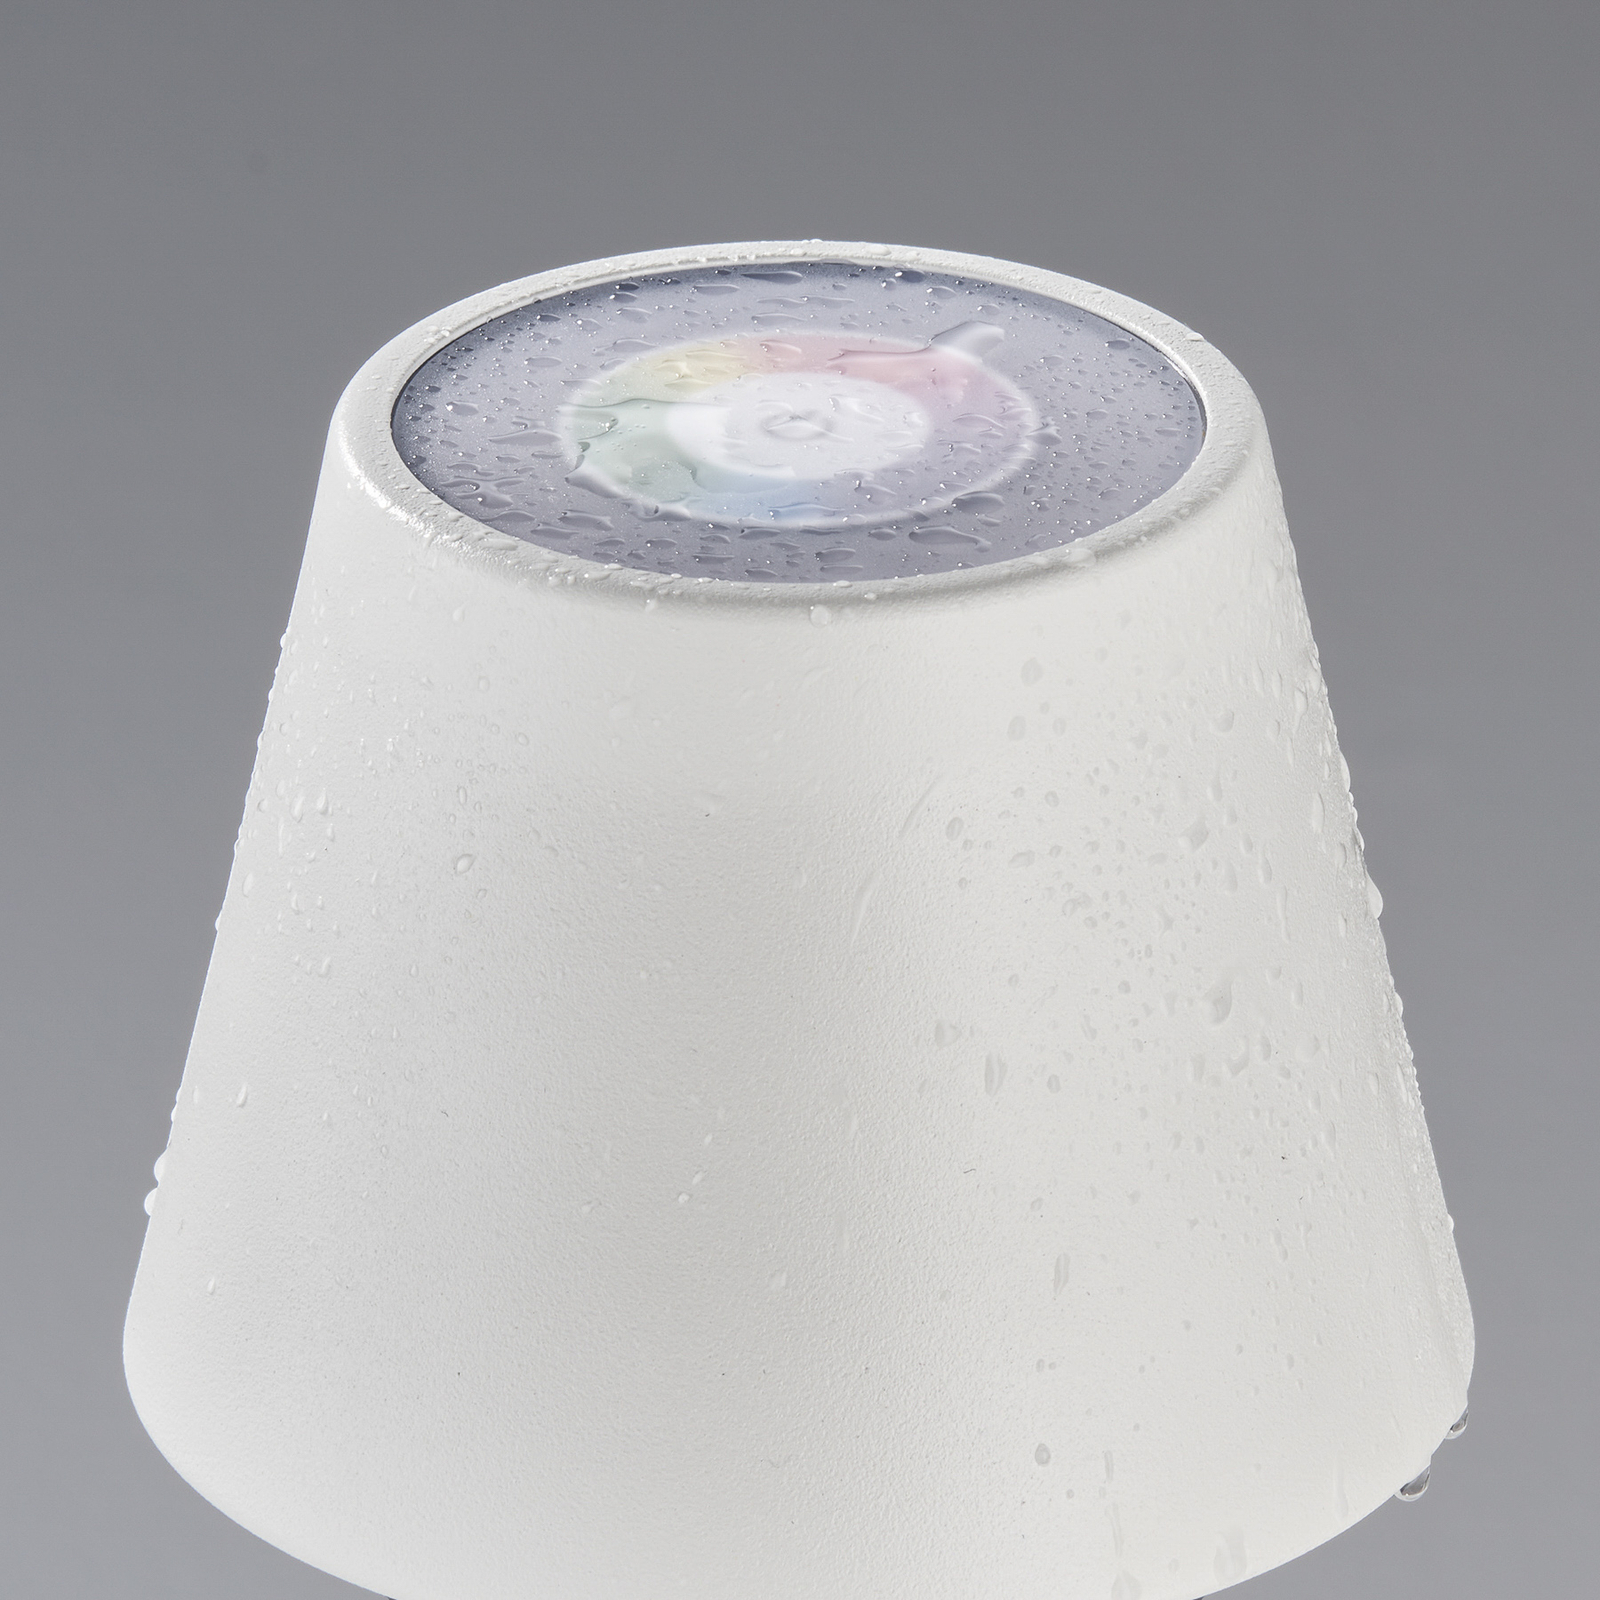 Lampa stołowa LED Cosenza RGBW biała piaskowa